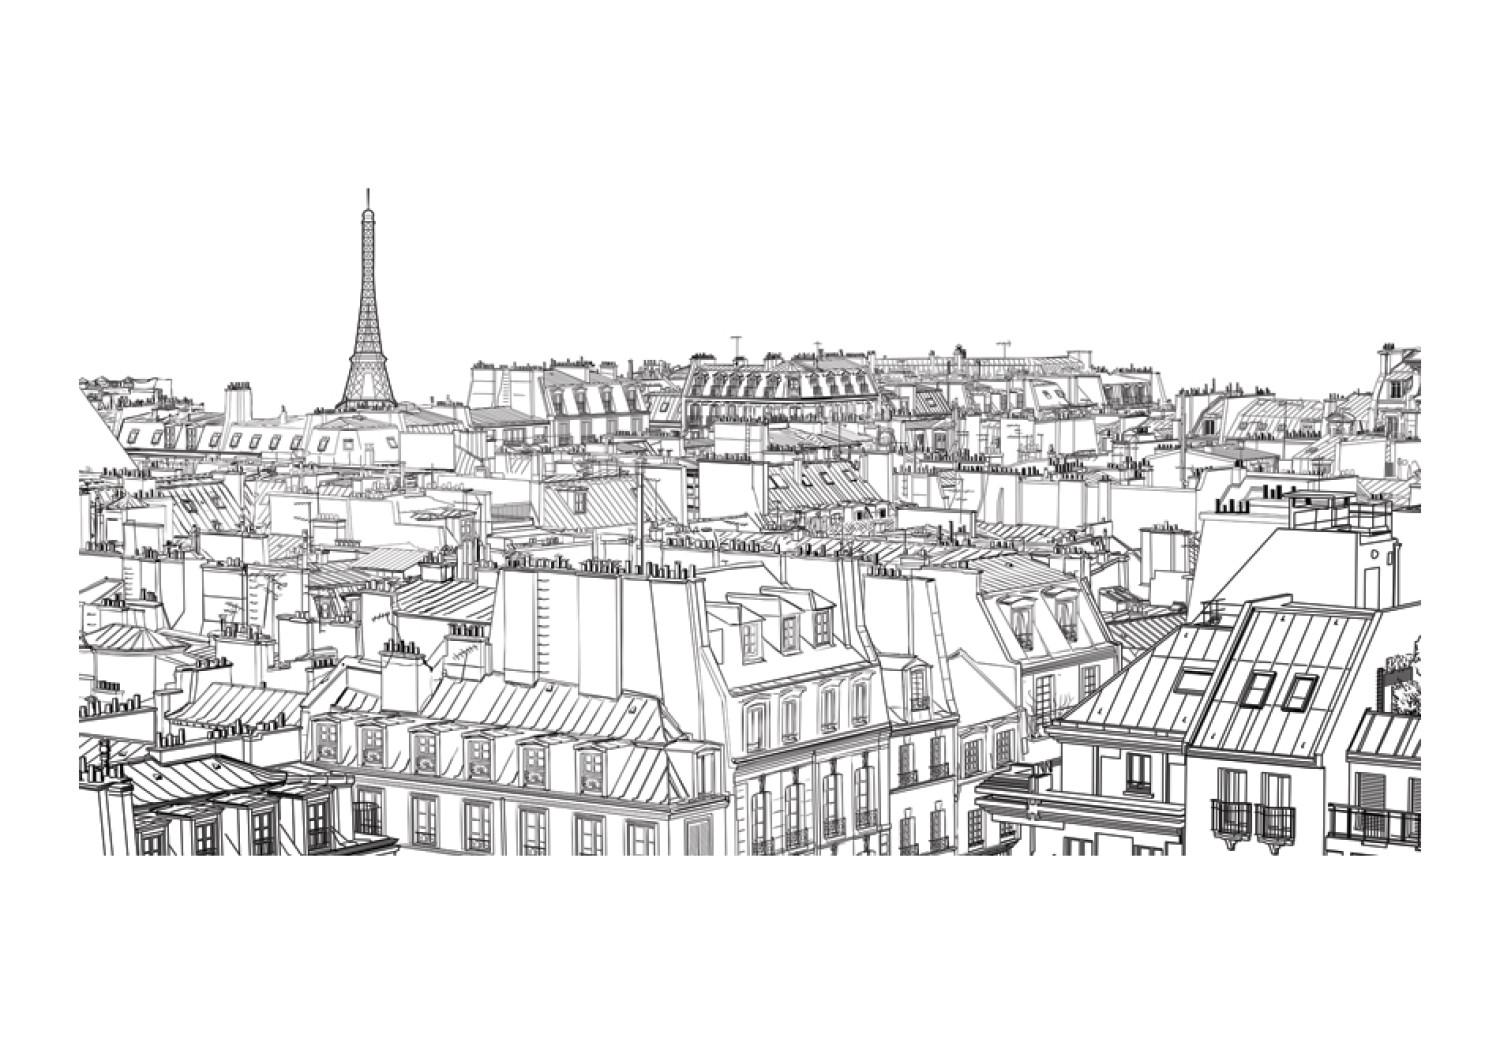 Fotomural Boceto de París - dibujo en blanco y negro de la arquitectura urbana